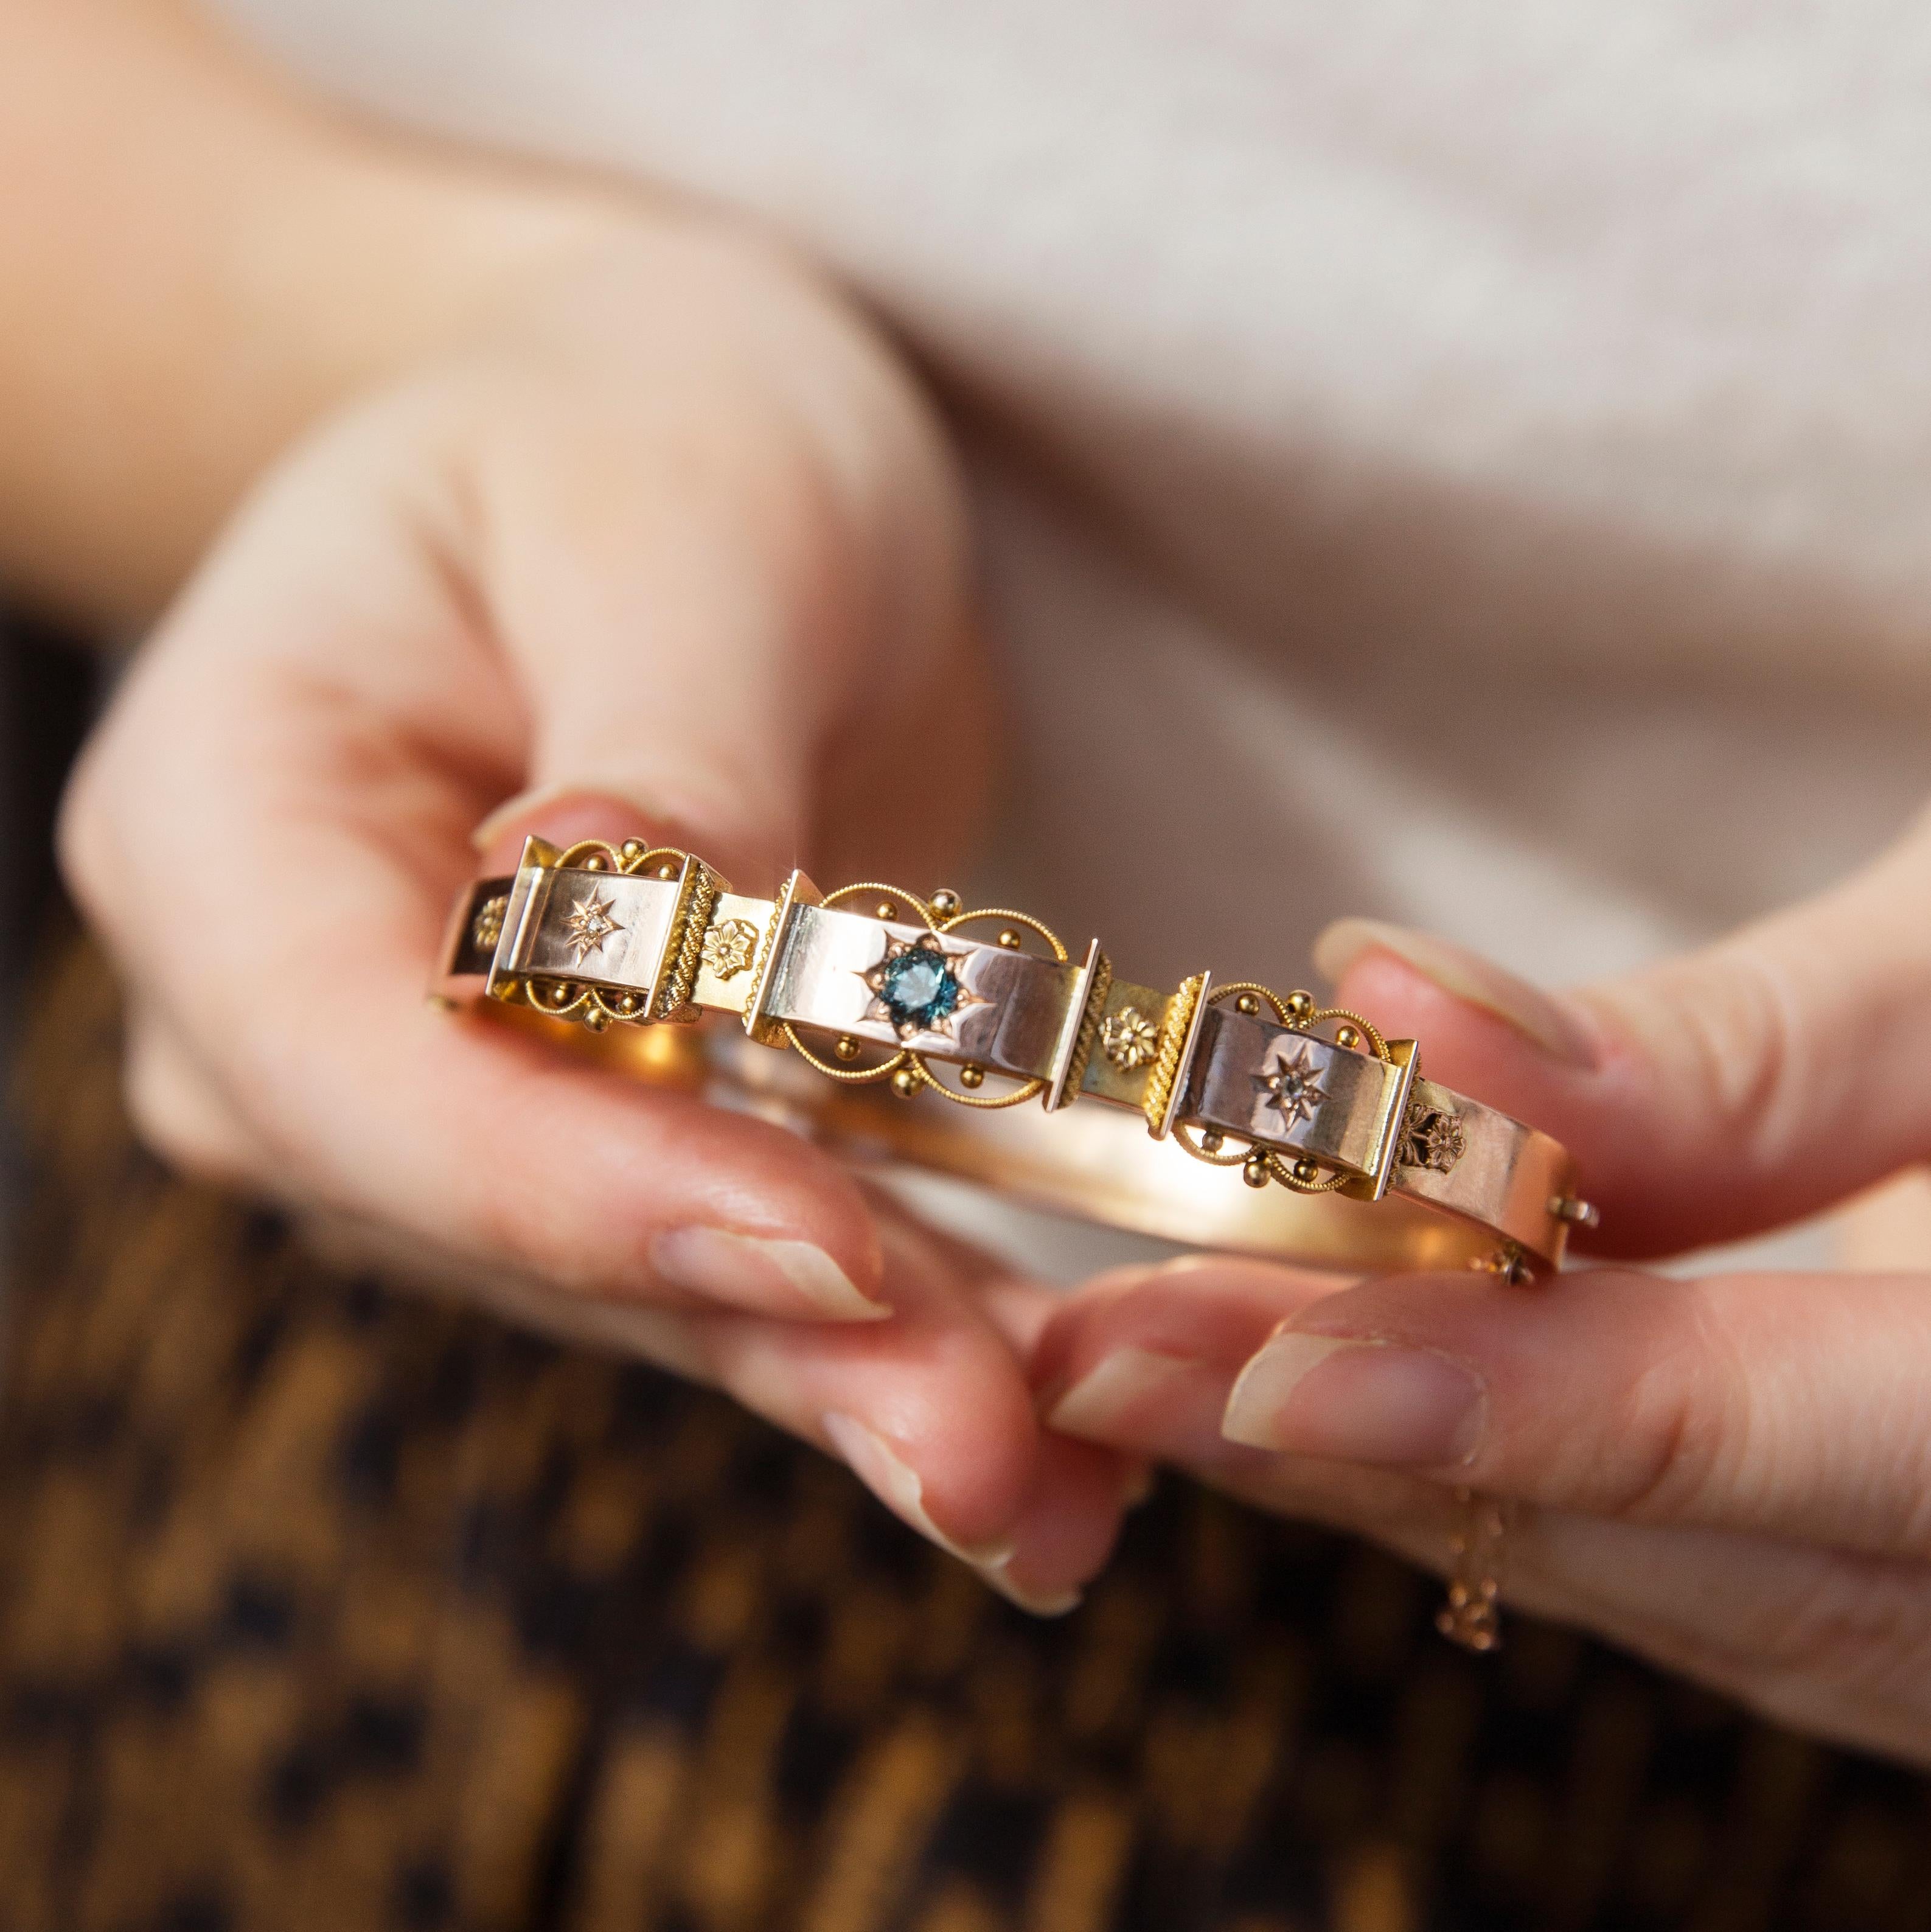 Le bracelet Easton, qui rappelle les jours passés, est un délice vintage. Ses alcôves en or contrasté, ornées de fleurs sauvages et d'étoiles, sont serties d'un riche saphir vert et de diamants étincelants. La touche finale d'une fine dentelle d'or